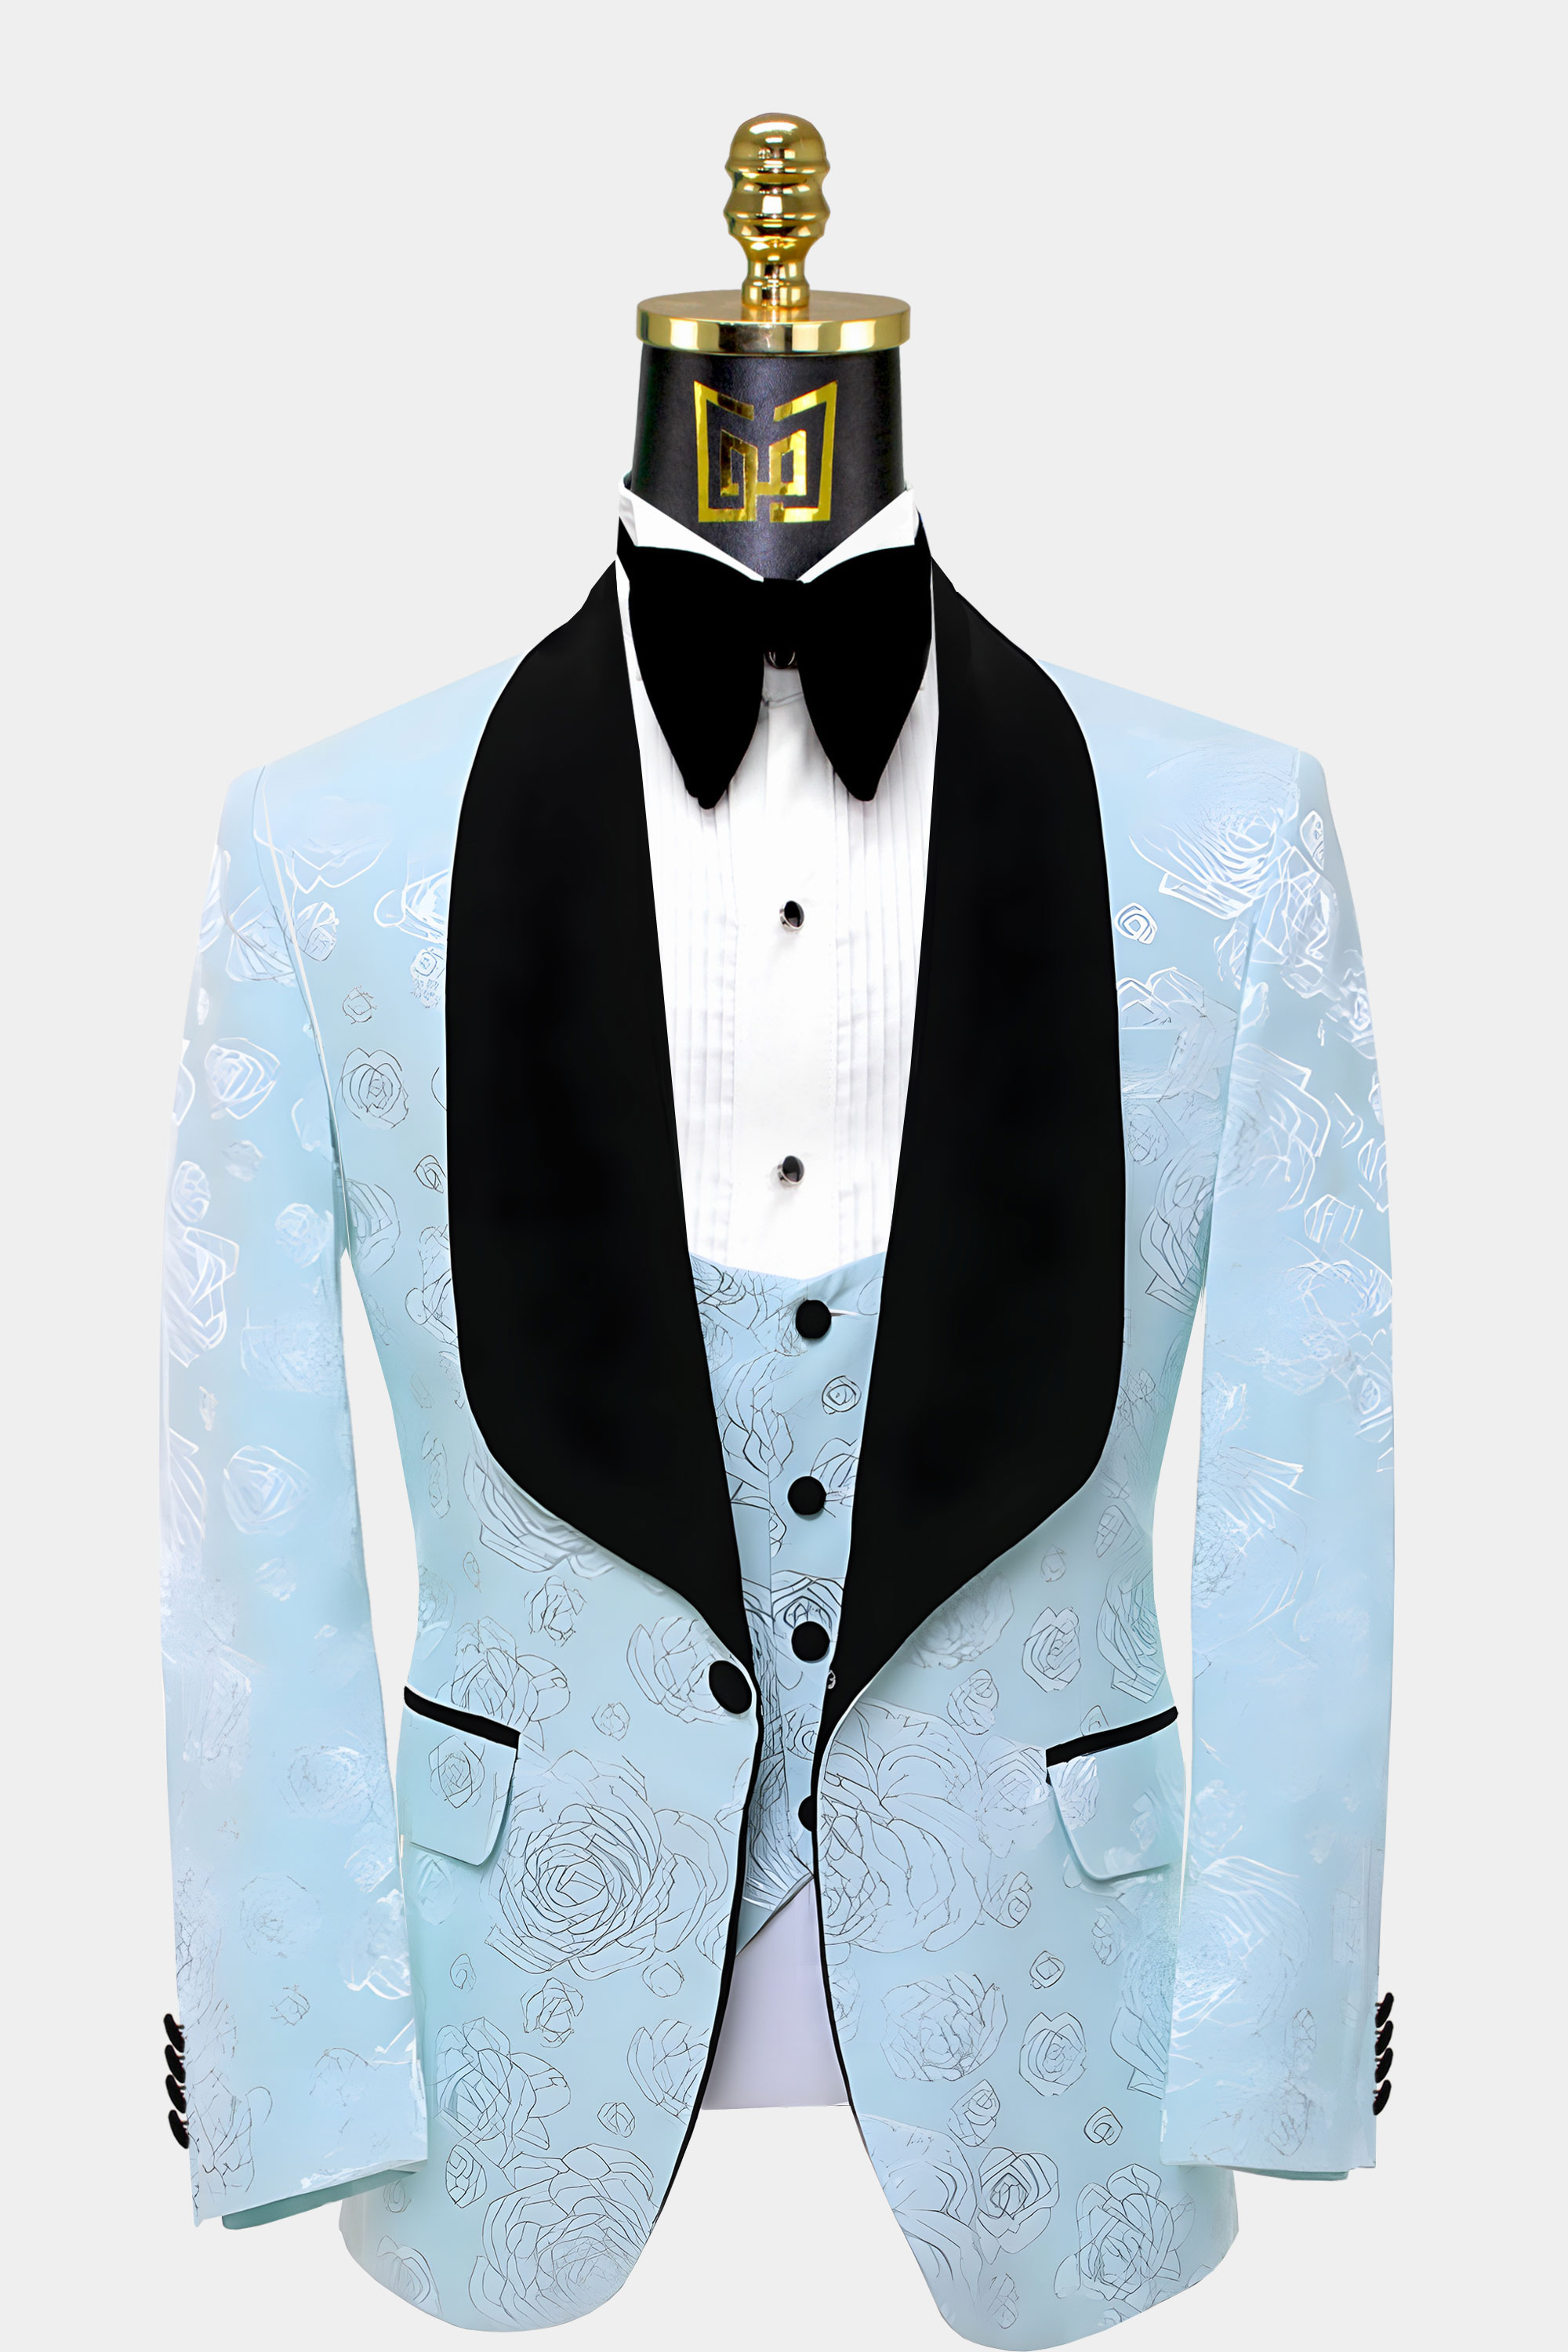 Turquoise-Blue-Tuxedo-Groom-Wedding-Prom-Suit-from-Gentlemansguru.com